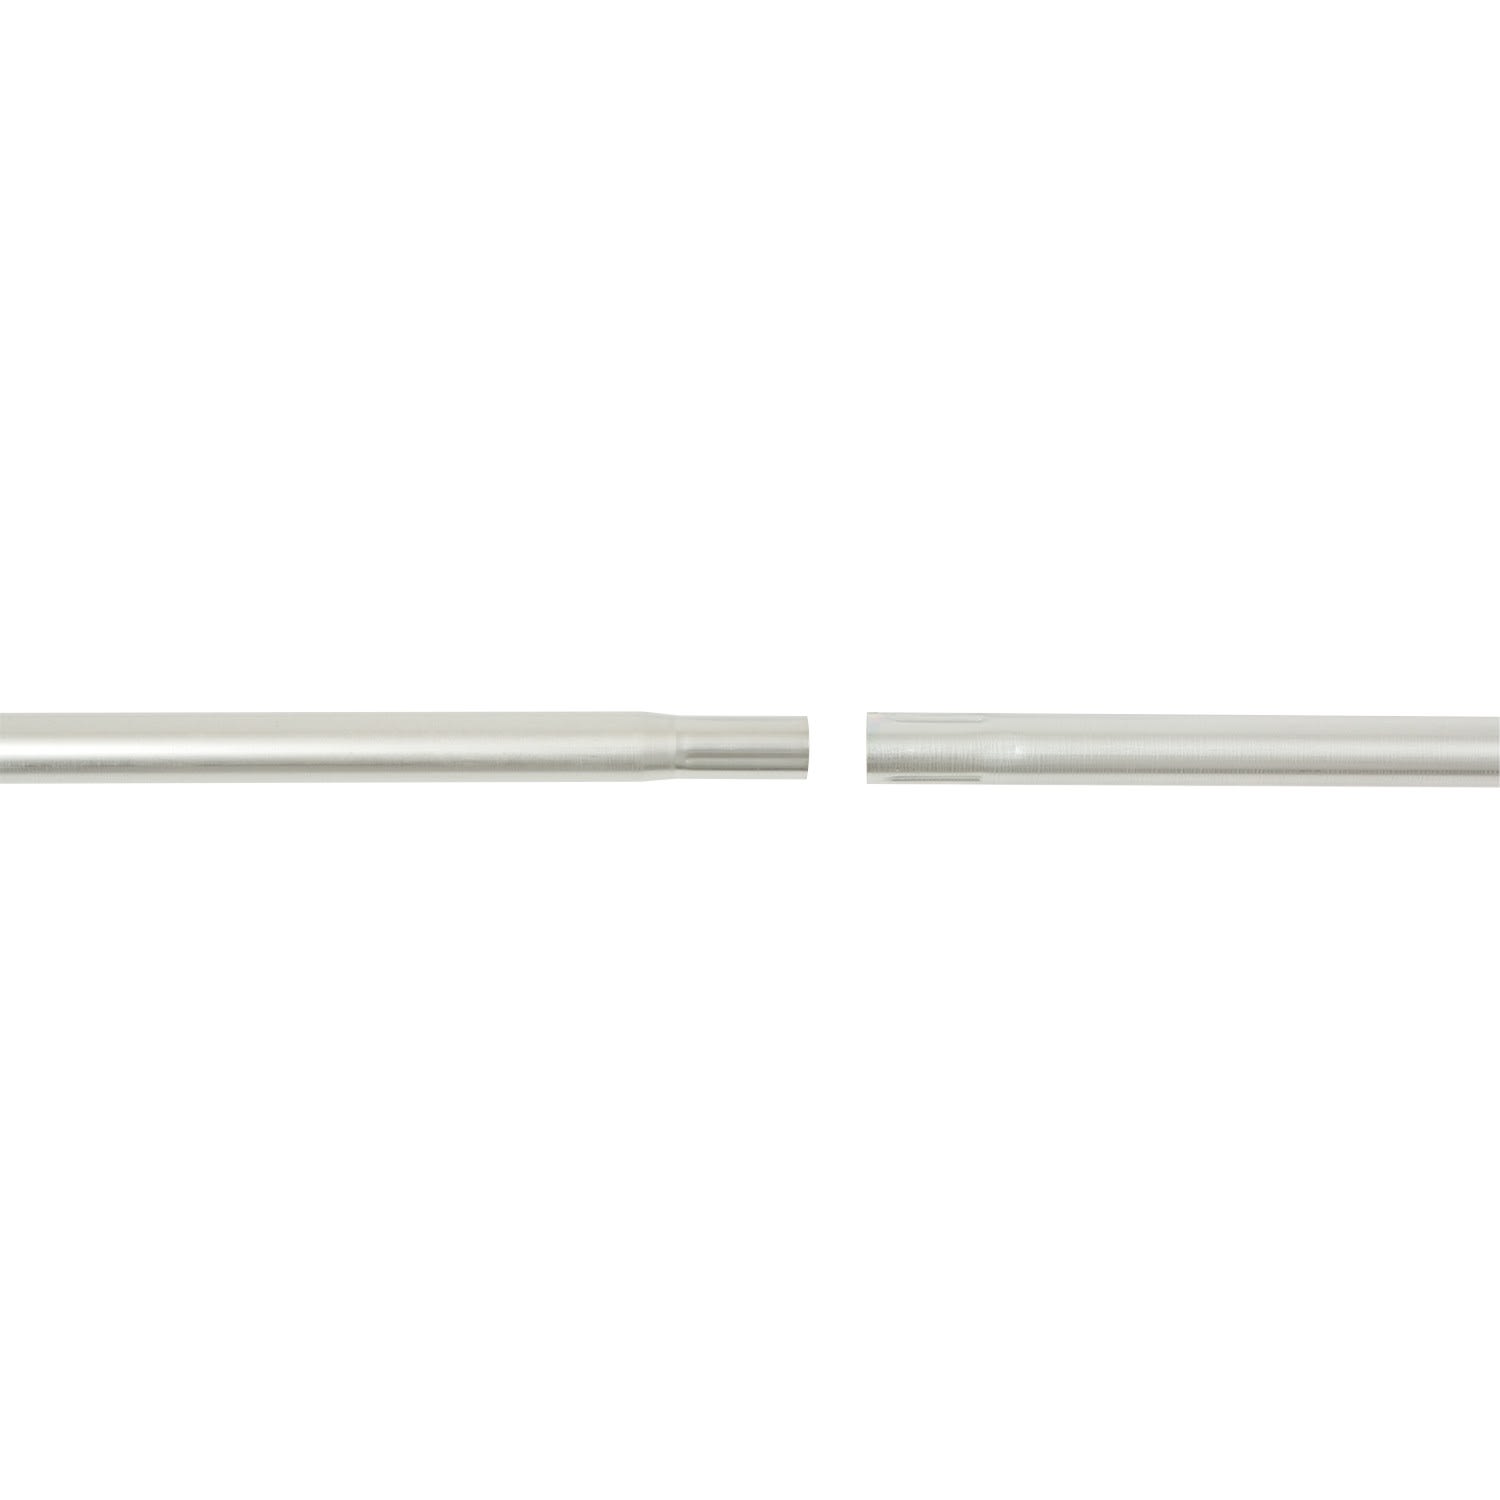 Erard - Tronçon acier emboîtable de 1.5 mètres Ø 40 mm x 1,2 mm. Galvanisé